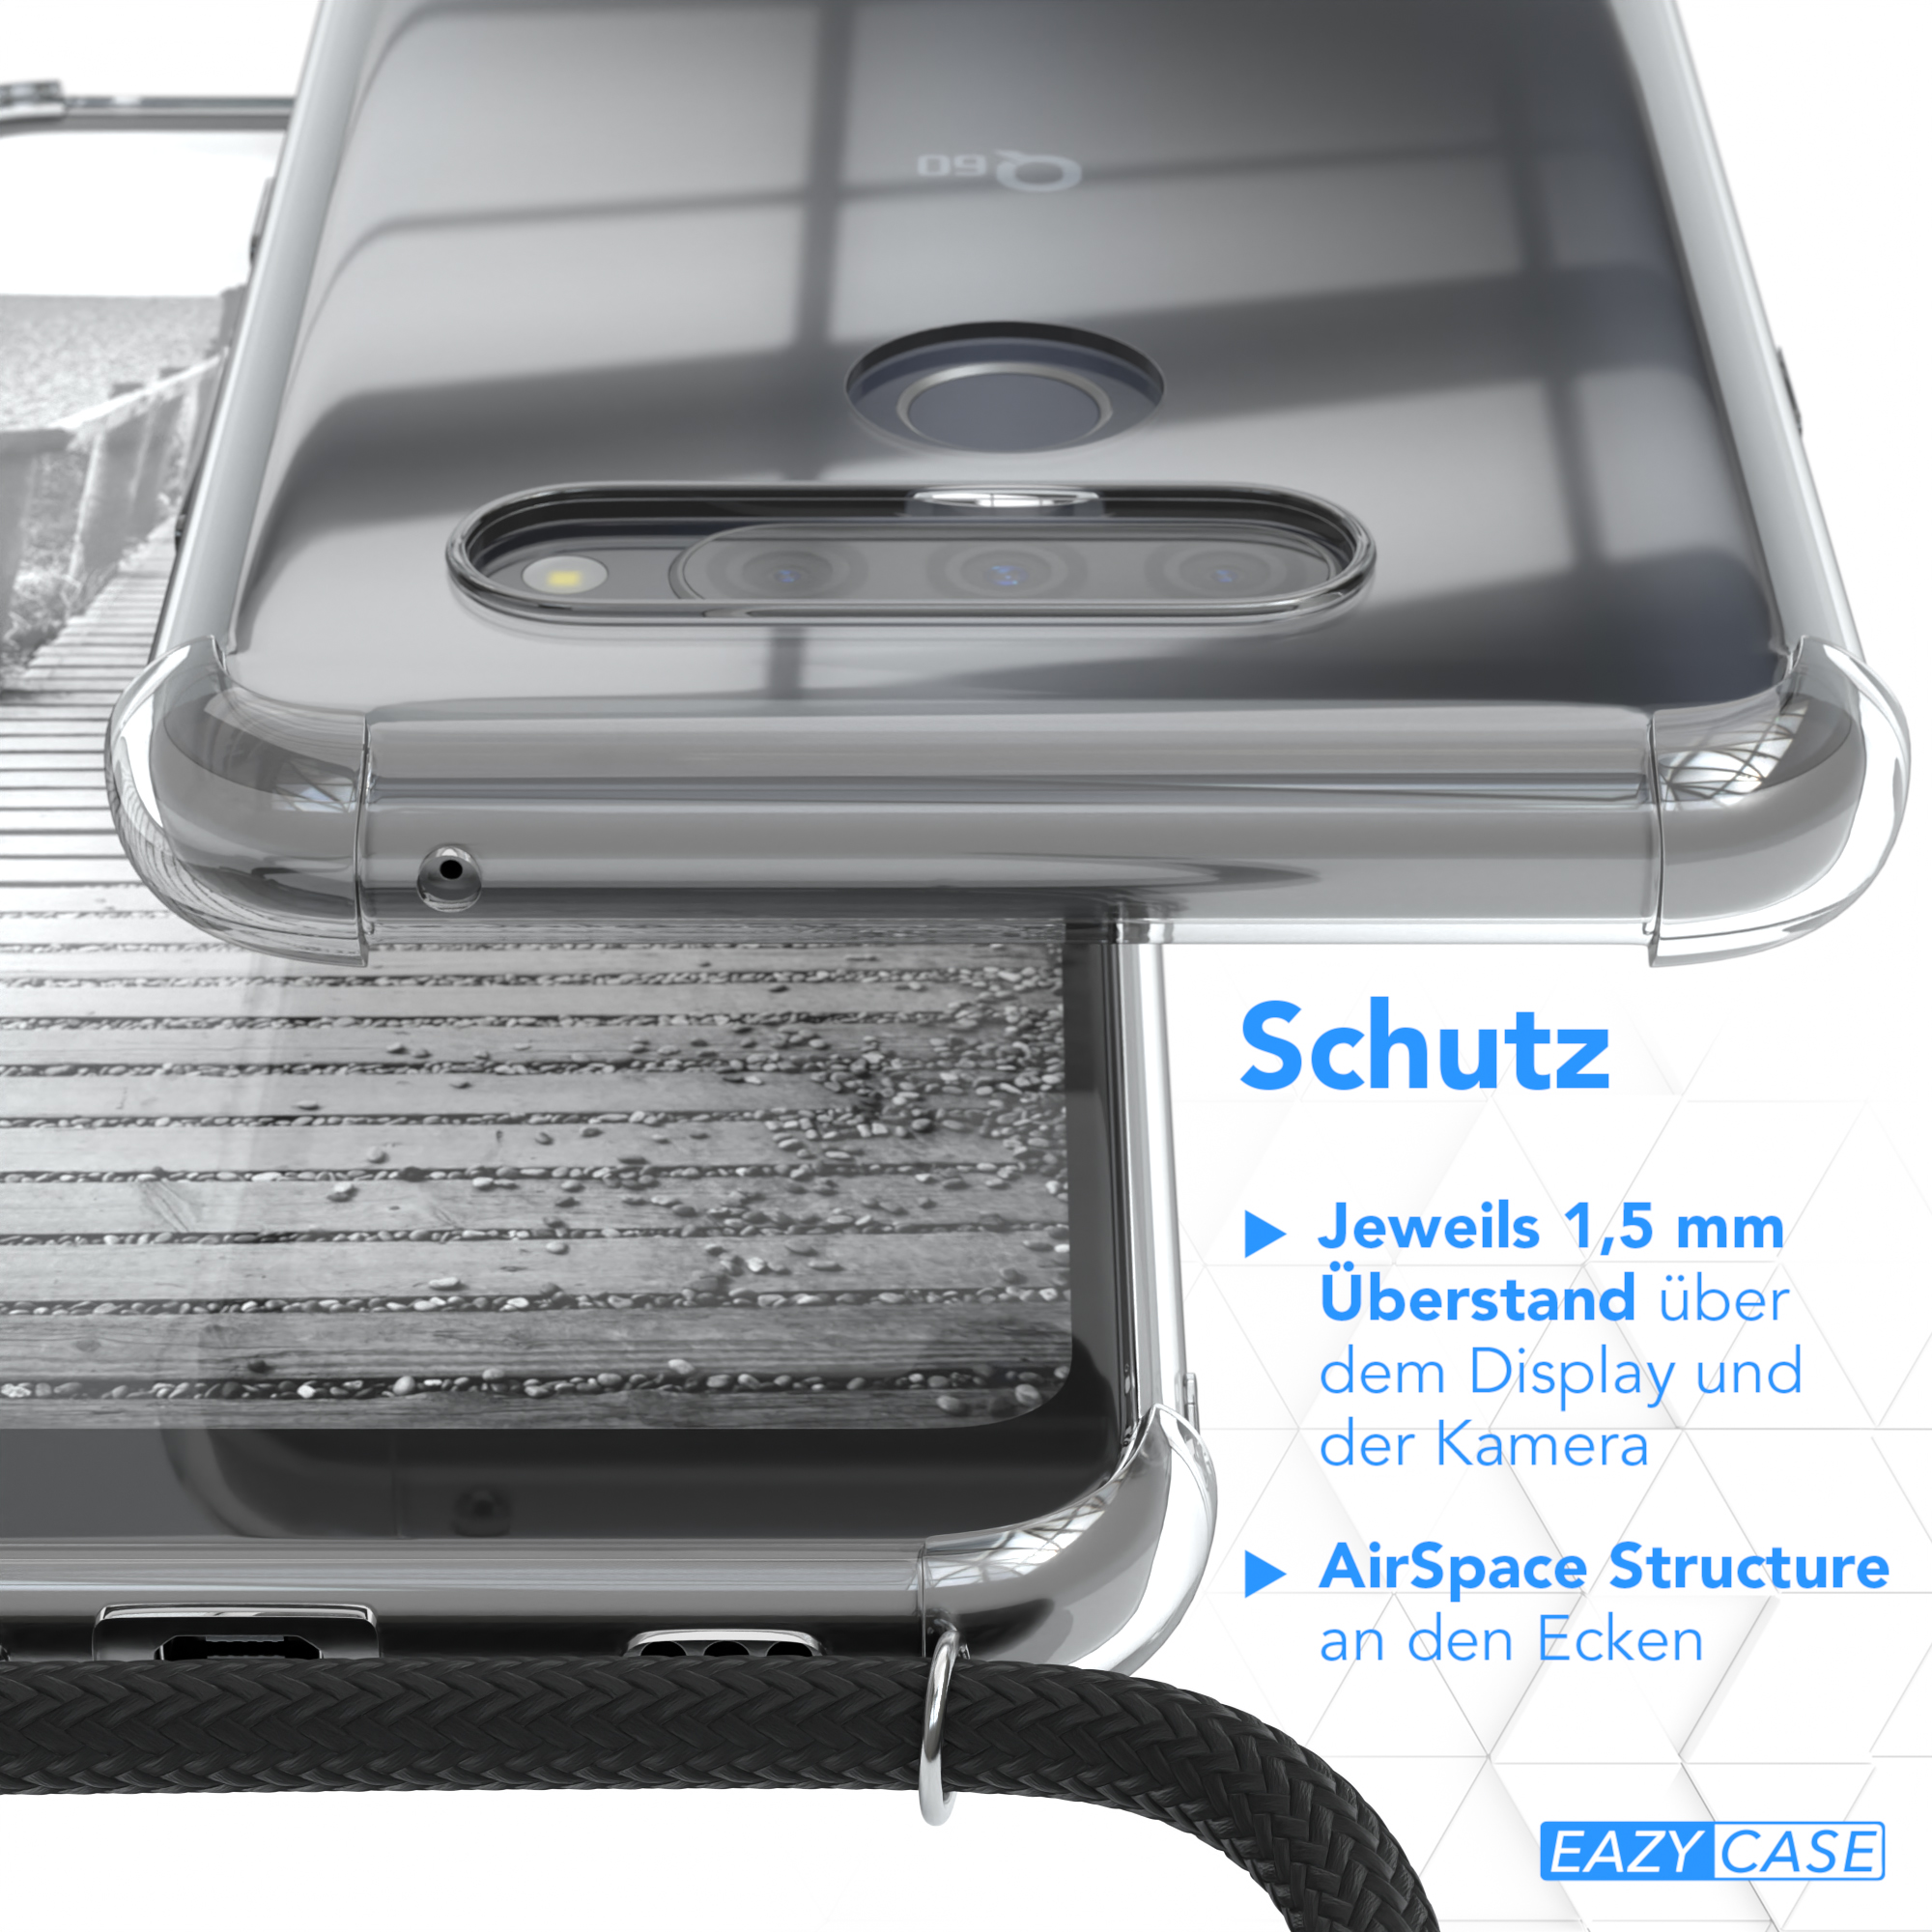 Umhängetasche, Schwarz LG, / Clear CASE Cover K50, Umhängeband, EAZY Q60 / Silber mit Clips